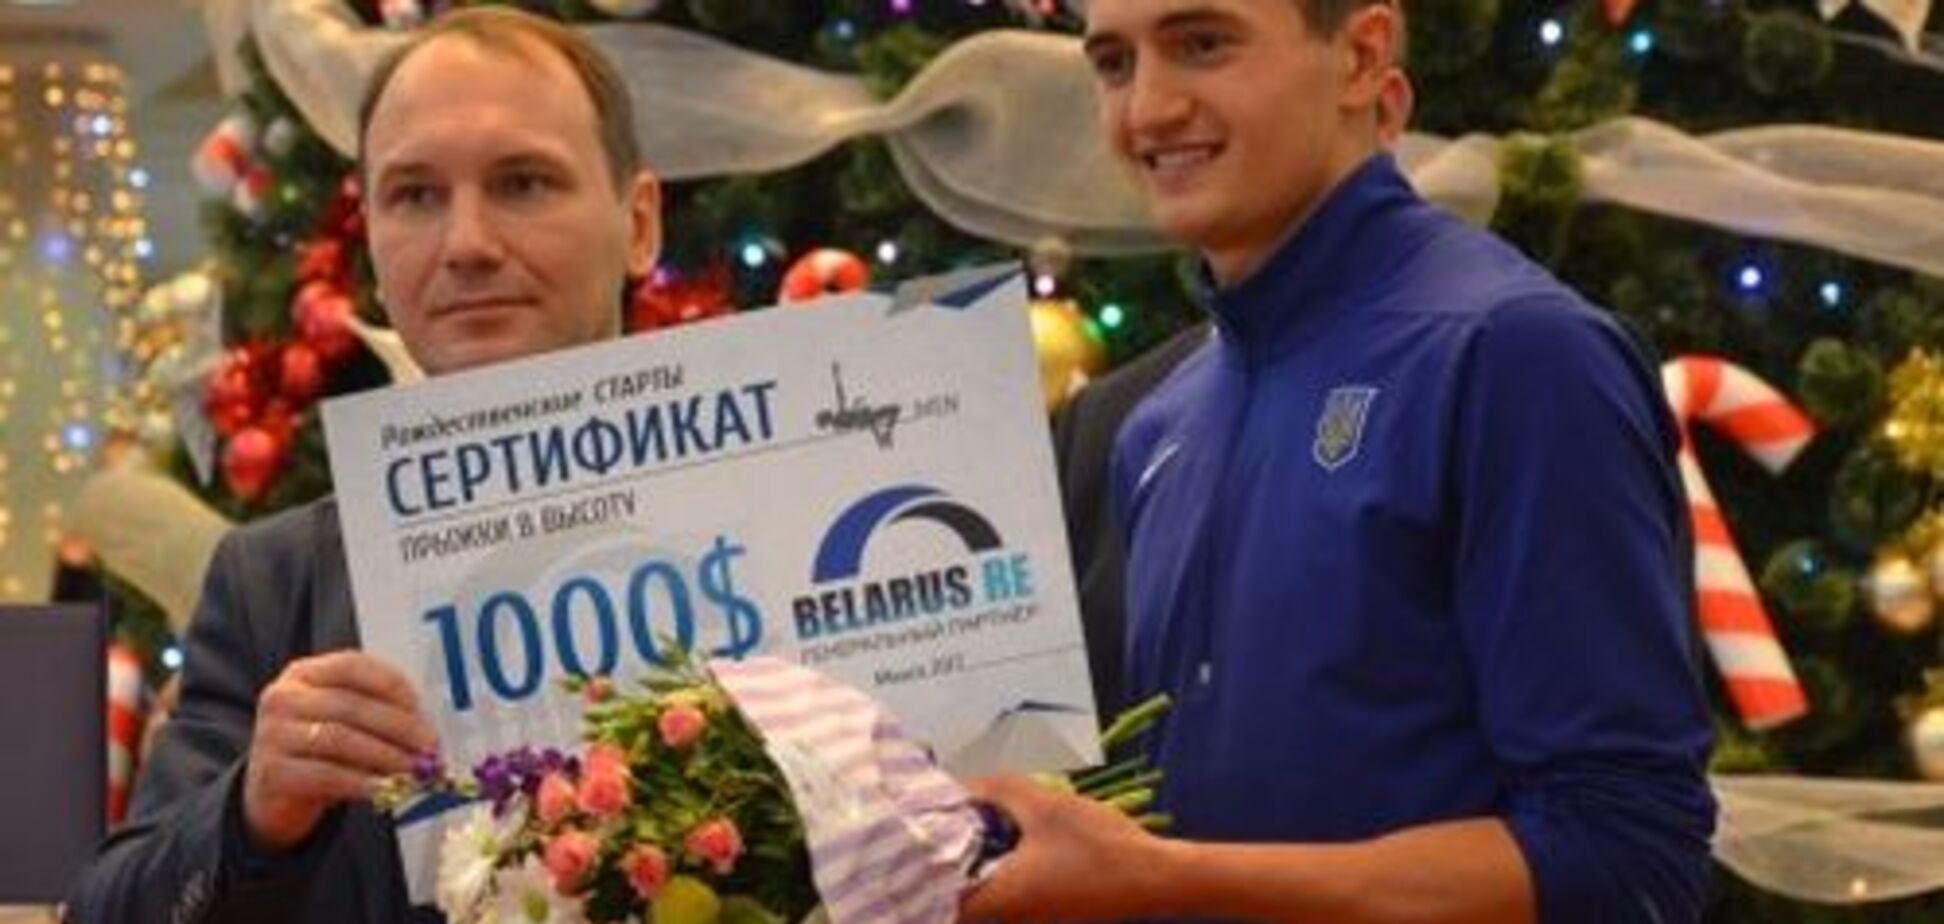 Український легкоатлет з рекордом виграв престижний міжнародний турнір